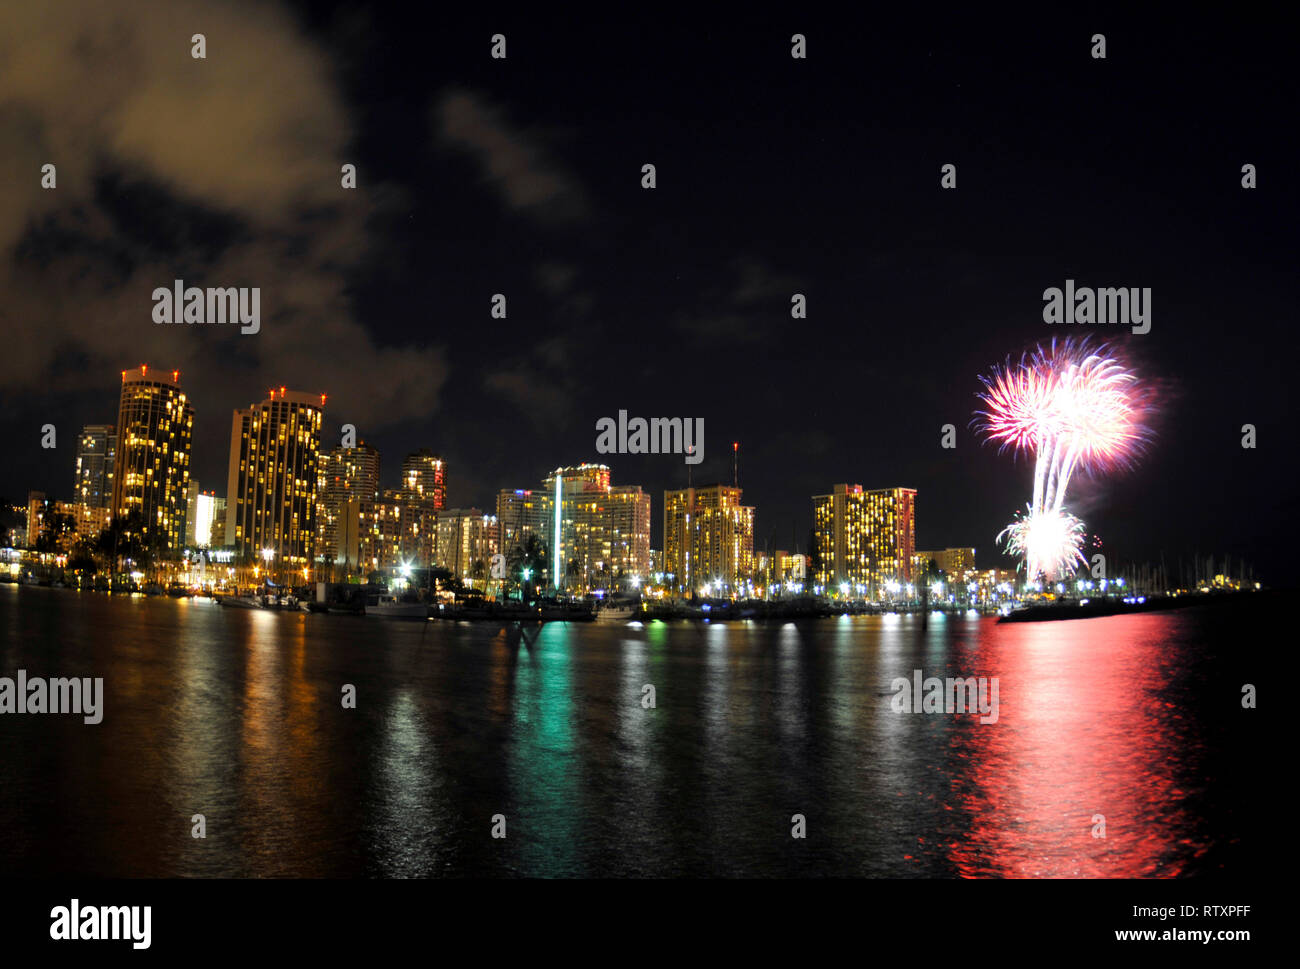 Vendredi Aloha fireworks at Waikiki, Honolulu, Oahu, Hawaii, USA Banque D'Images